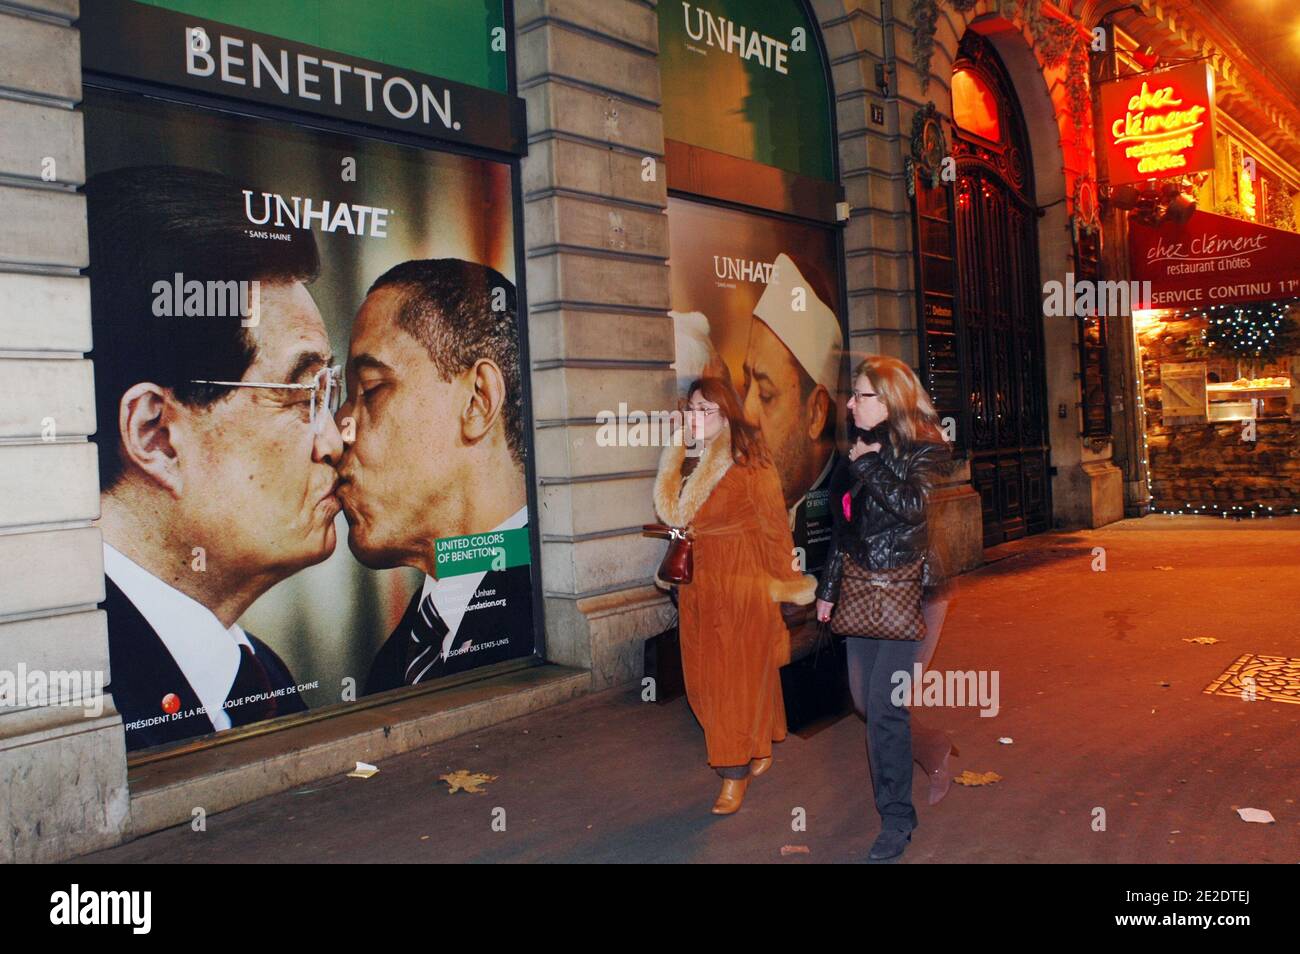 Carteles de la nueva campaña publicitaria de Benetton 'Unhate' están en  exhibición en sus escaparates emblemáticos, Place de l'Opera en París,  Francia, 16 de noviembre de 2011. Muestran varias imágenes de opositores